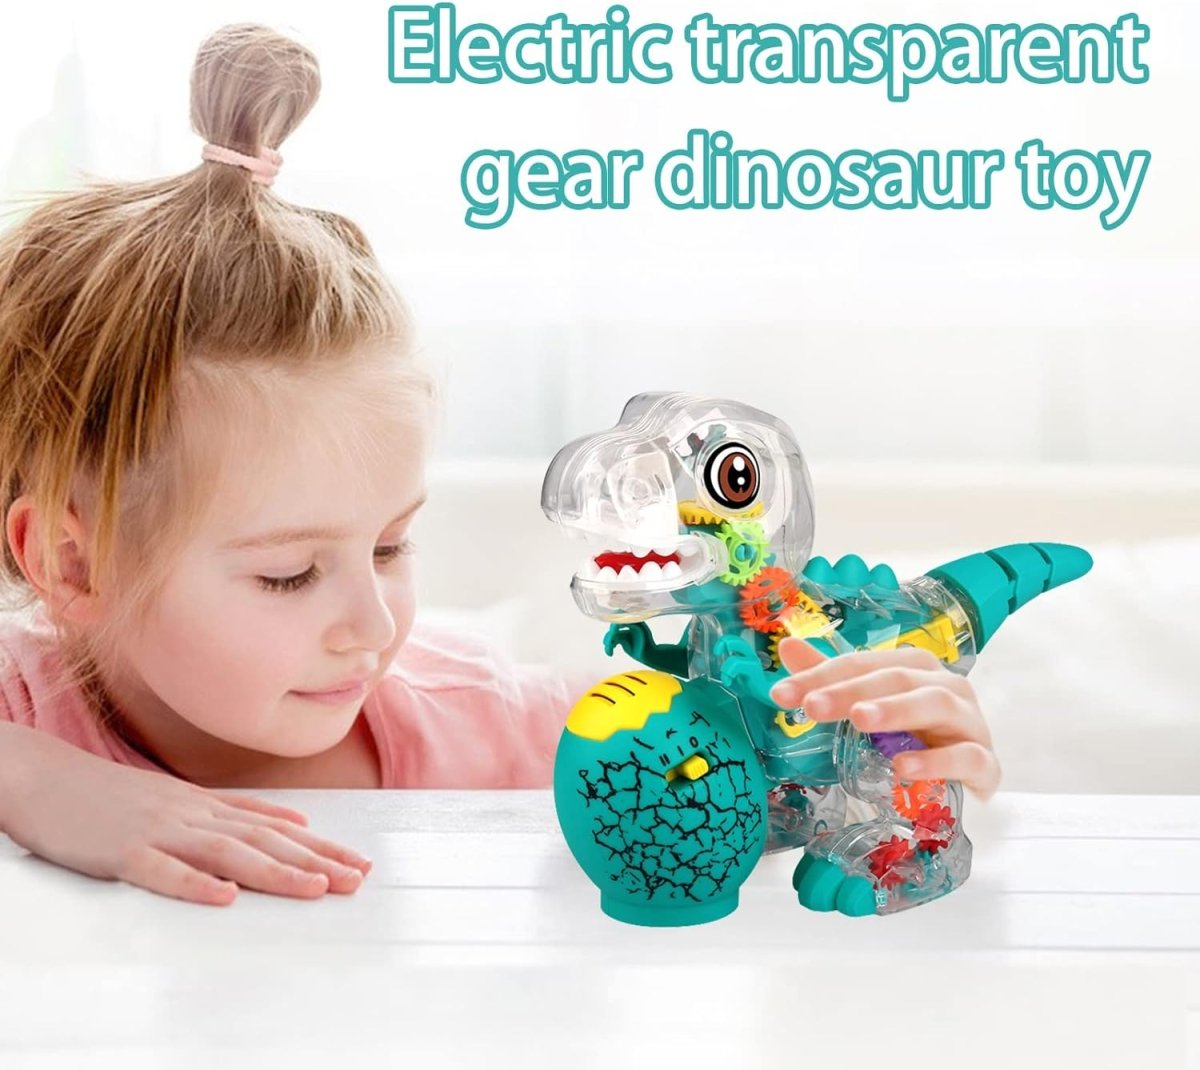 theno1plugshop - LED Light Transparent Musical Dinosaur Toy - theno1plugshop